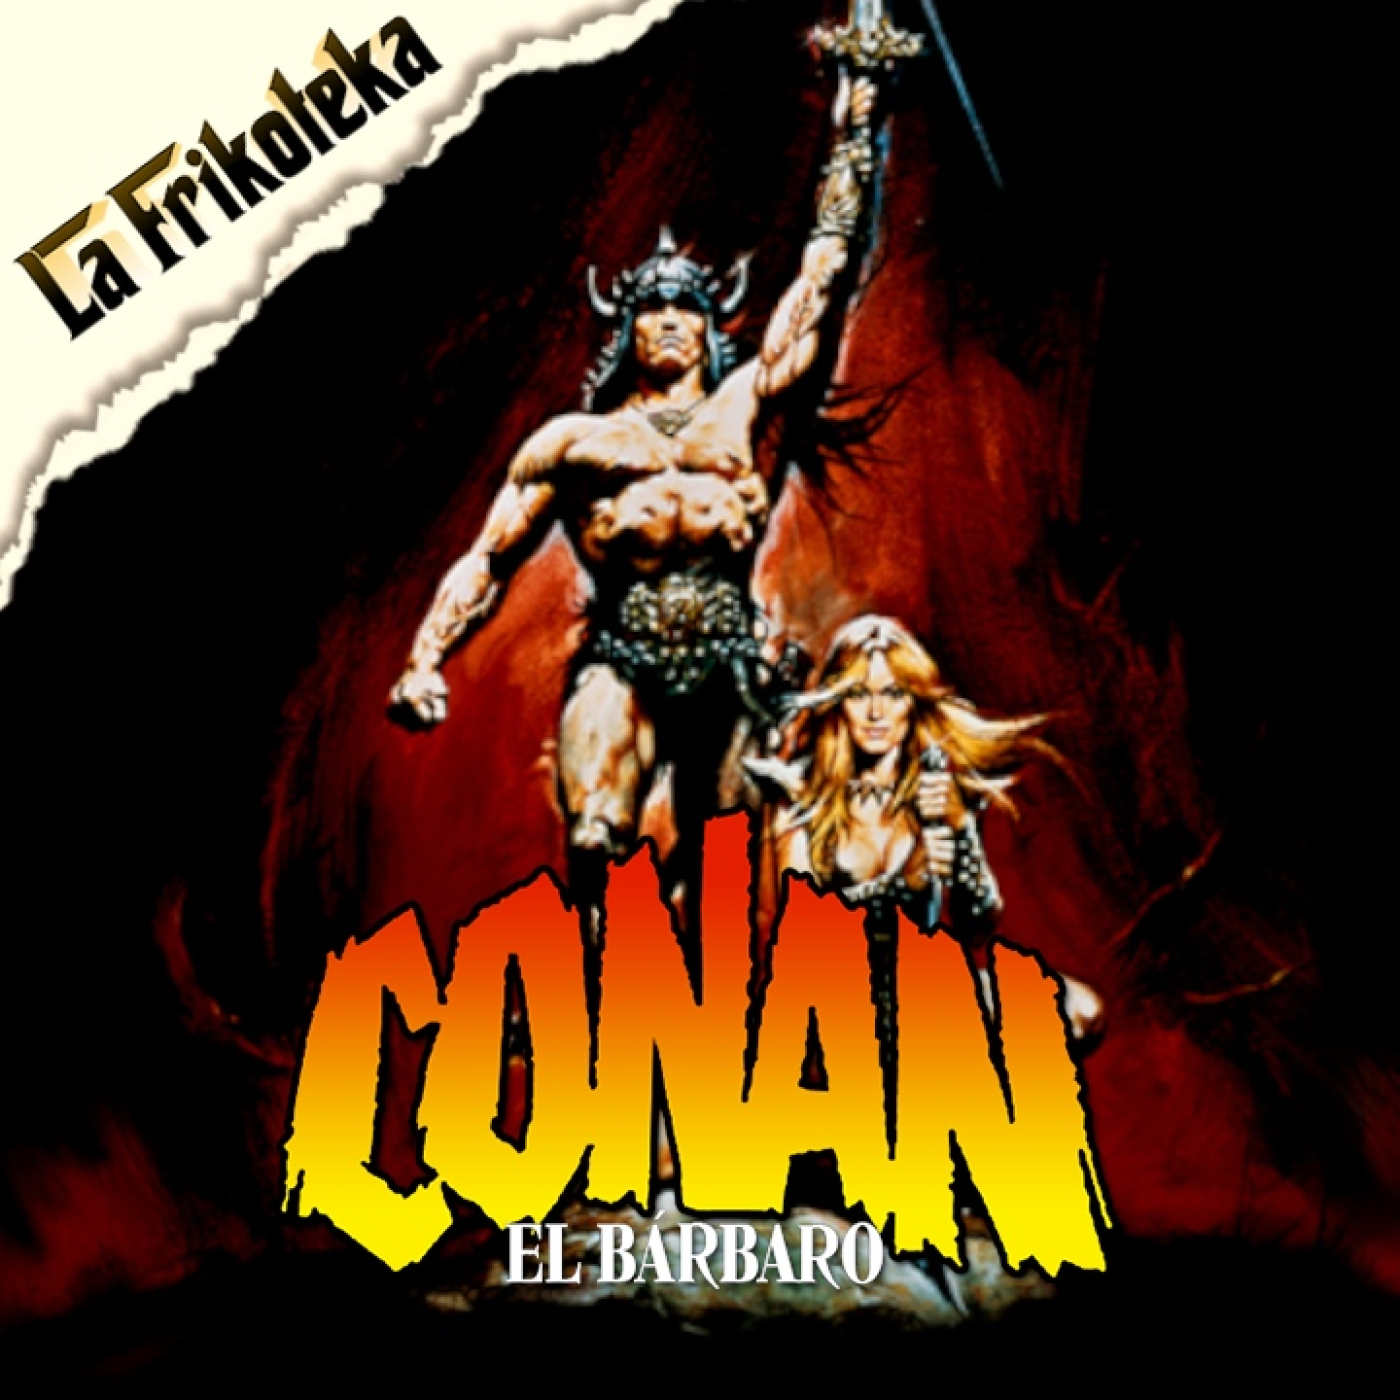 168 - Conan, el bárbaro (1982)